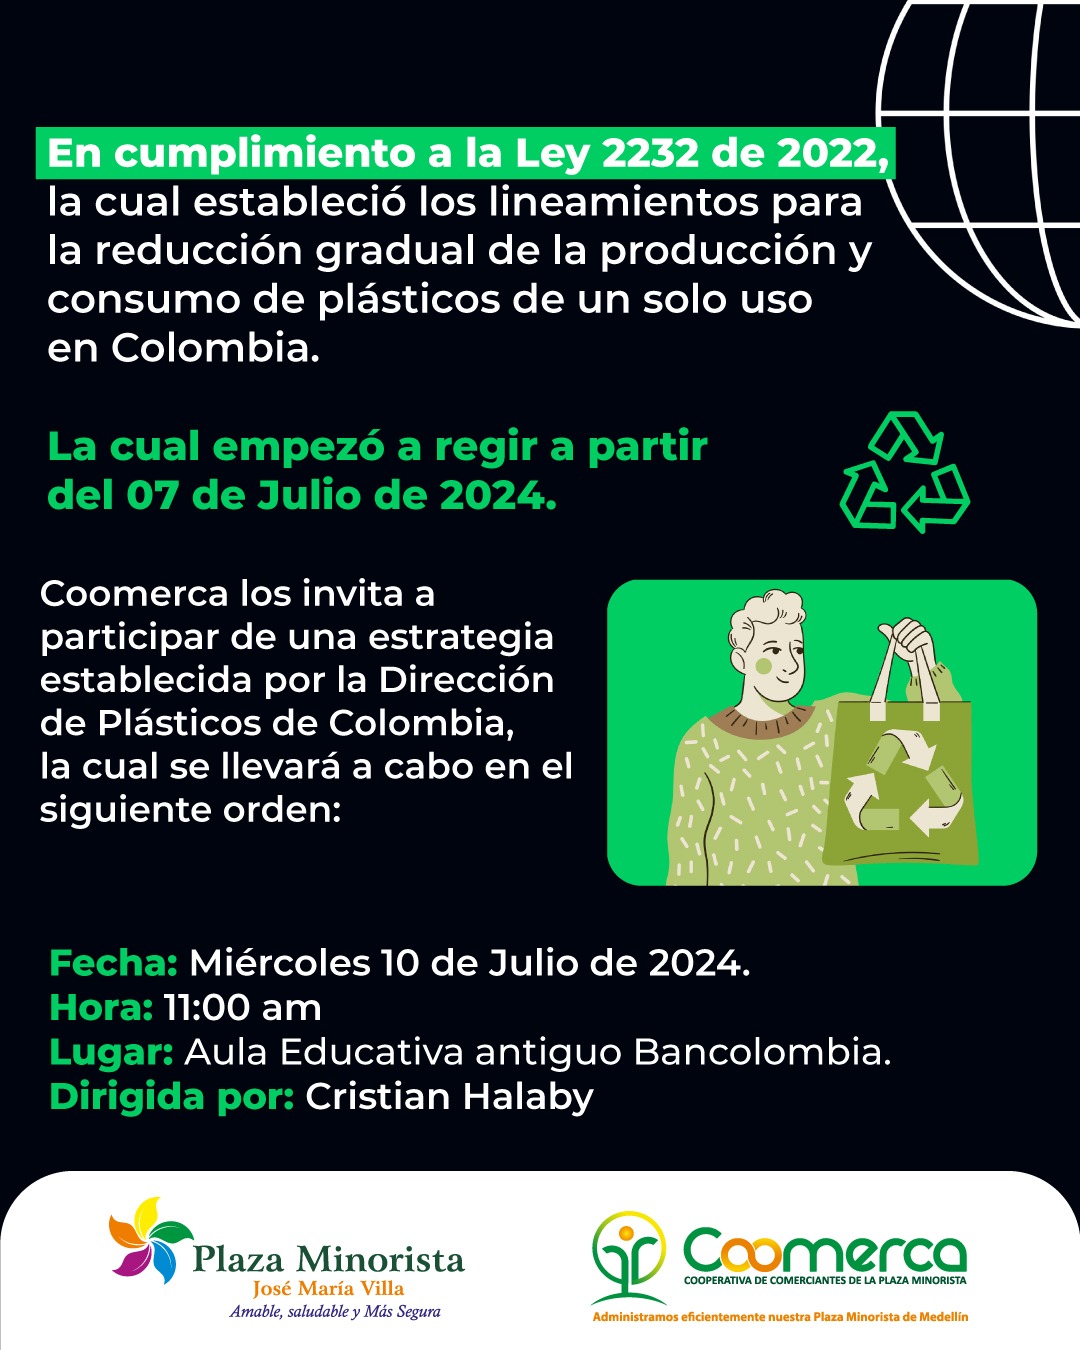 Ley 2232 de 2022 Reducción gradual de la Producción de Plástico de un solo uso